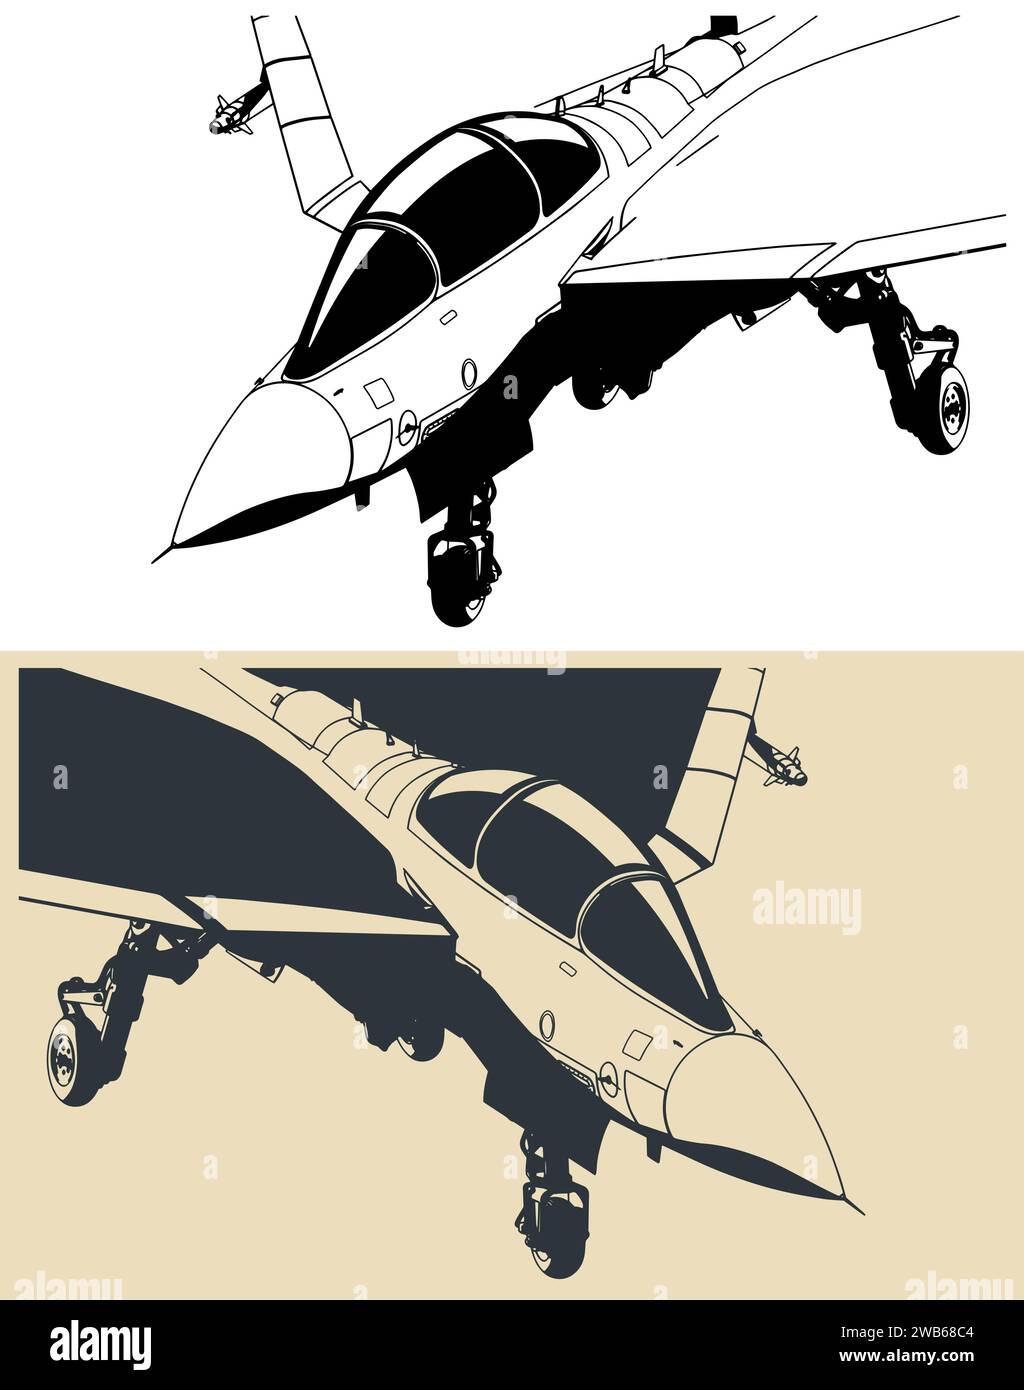 Disegno stilizzato di un moderno jet militare basato su una portabandiera leggera Illustrazione Vettoriale